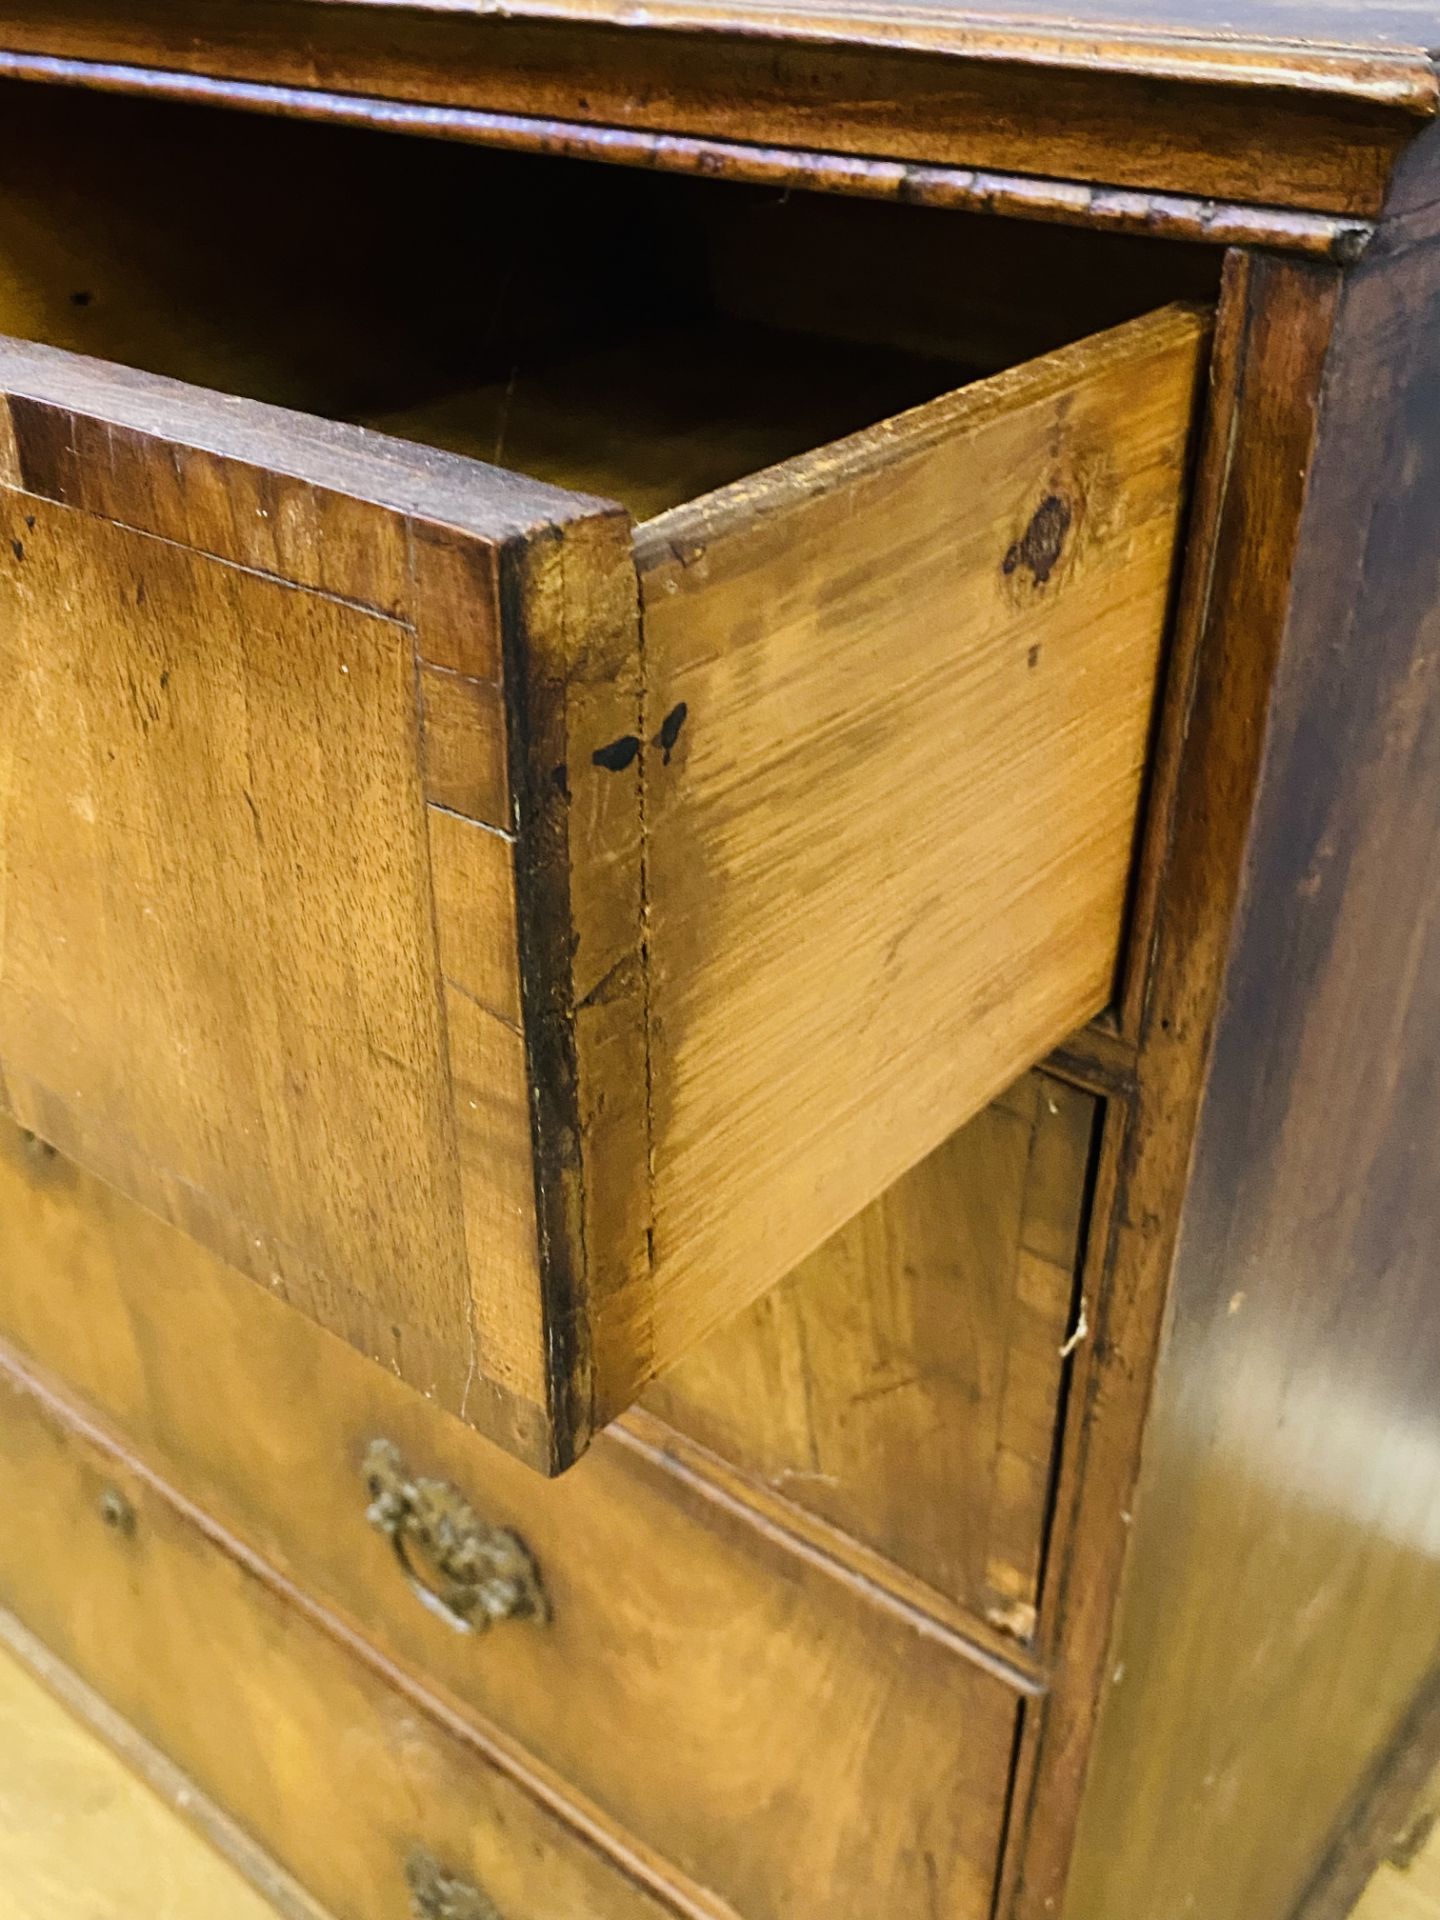 19th century mahogany veneer chest of drawers - Image 5 of 5